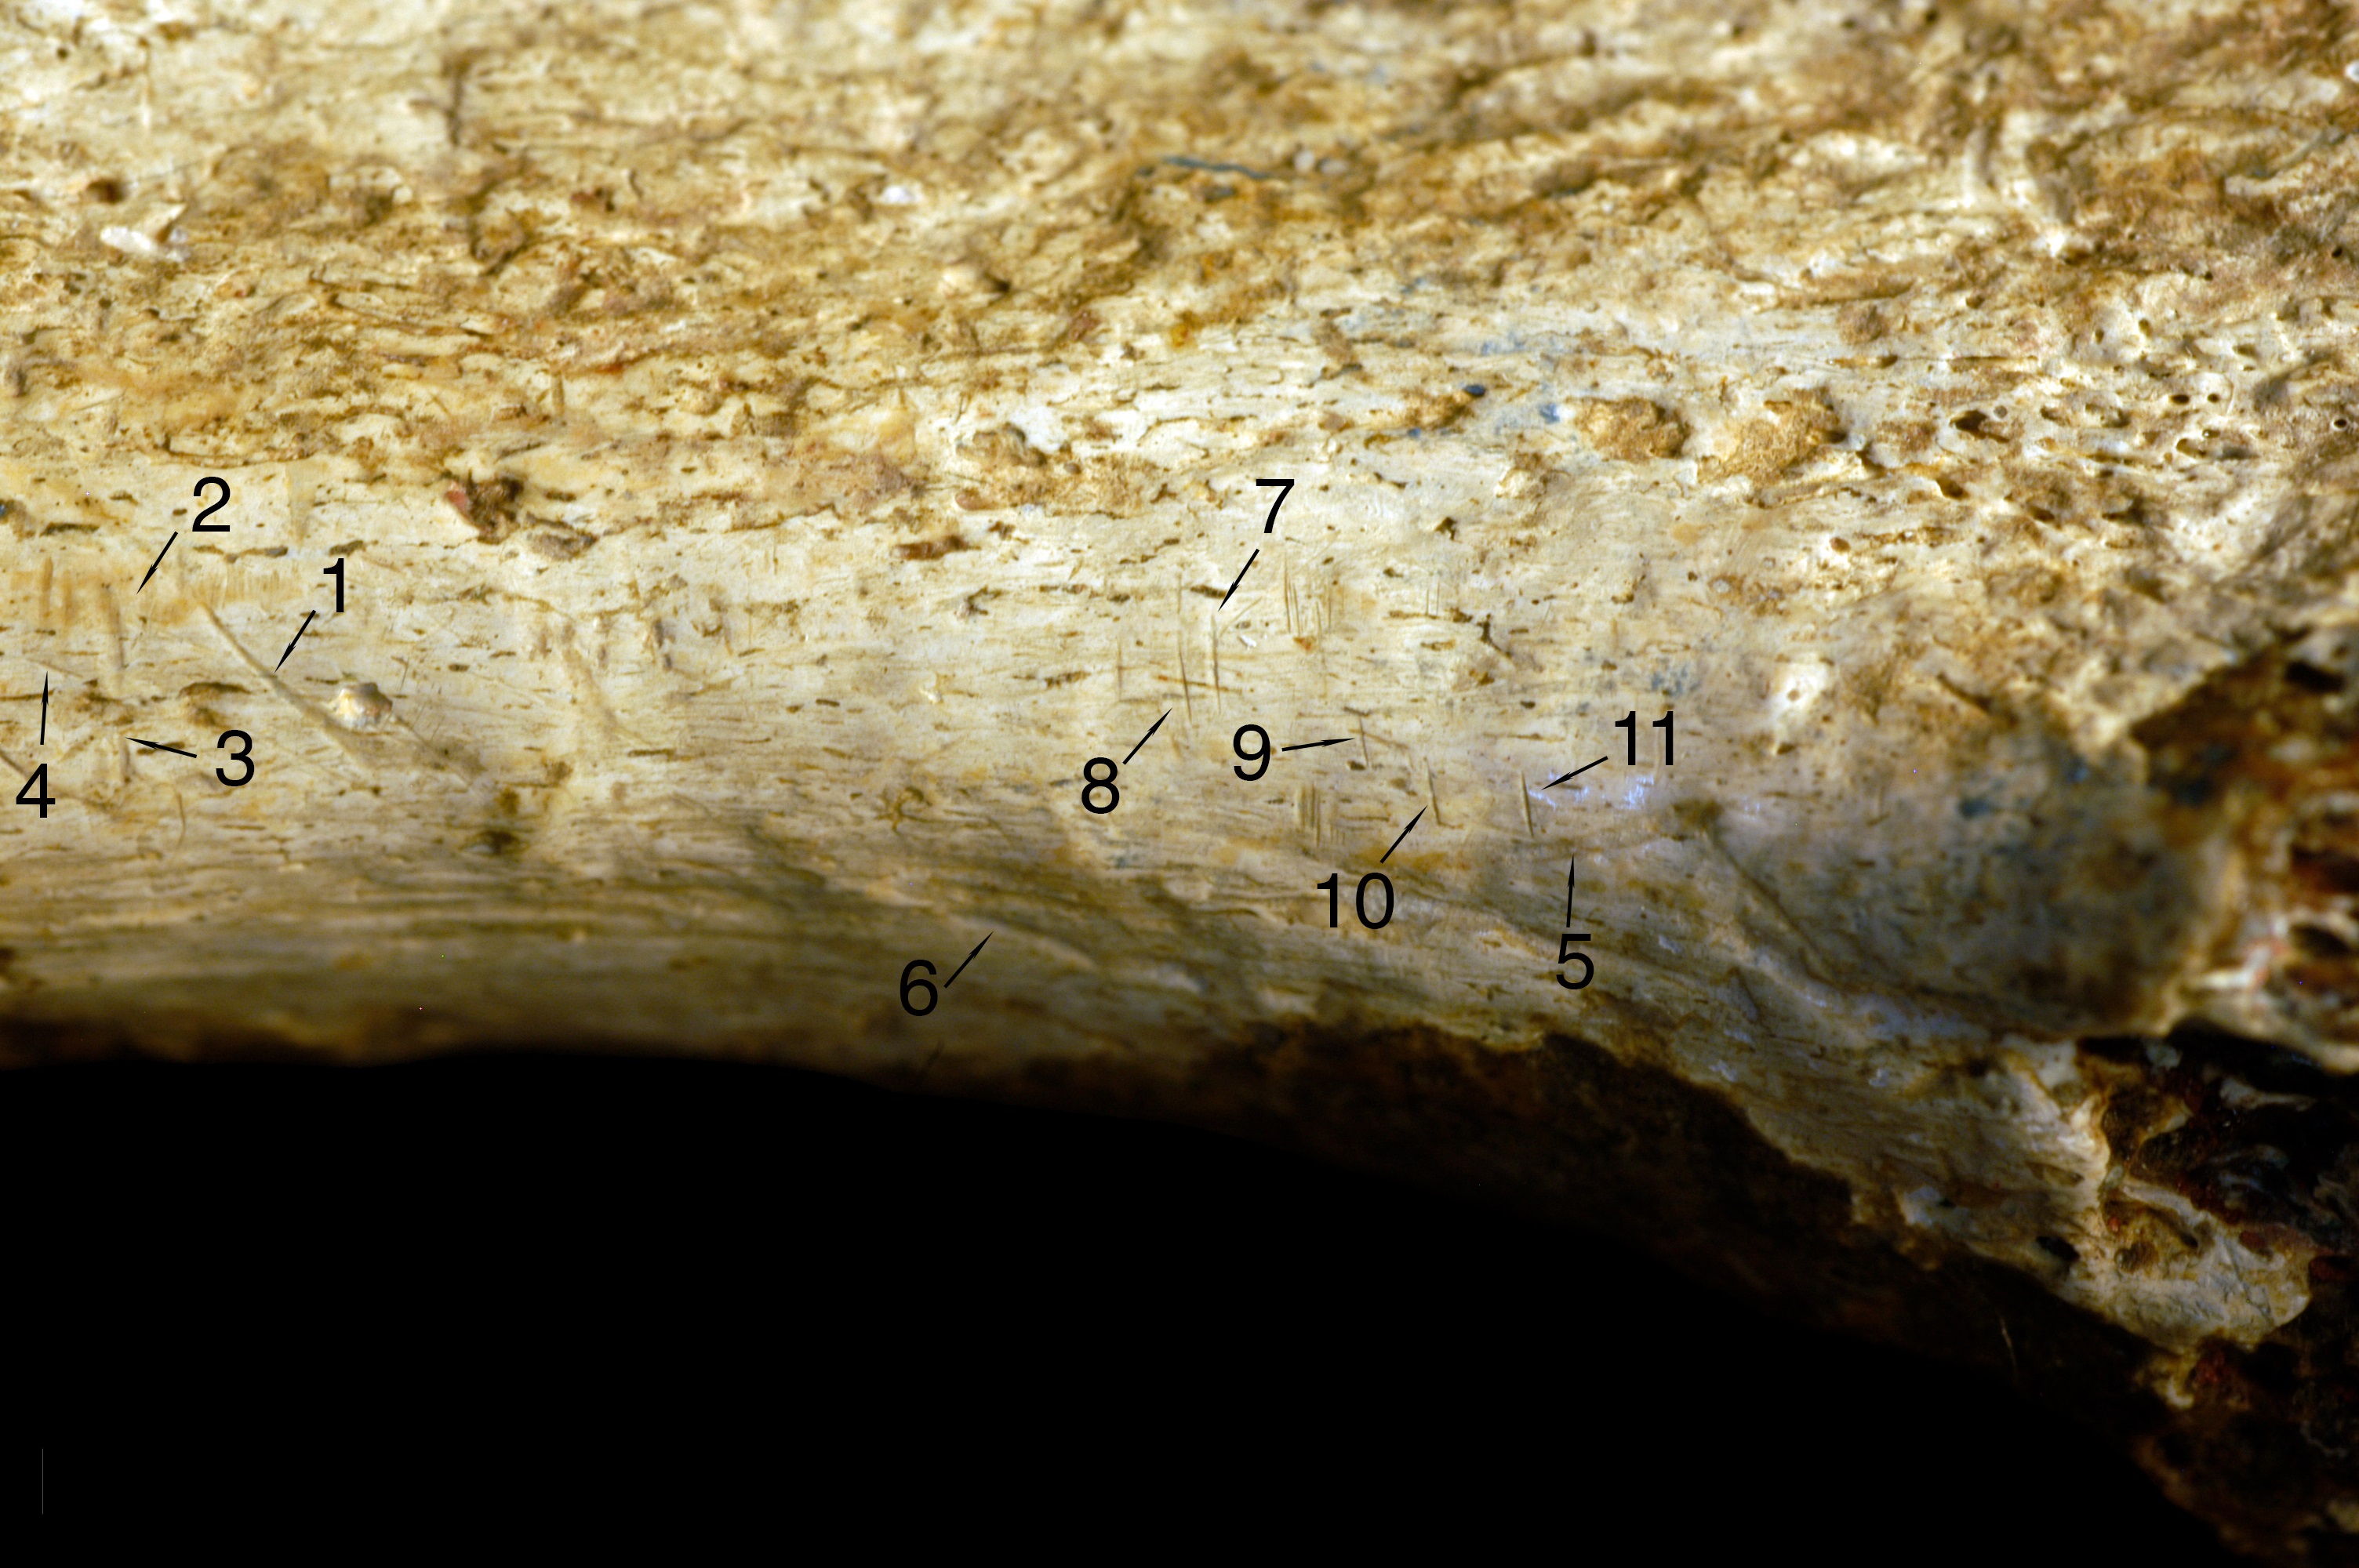 Detalle de la tibia fósil de un homínido con las marcas de corte numeradas.